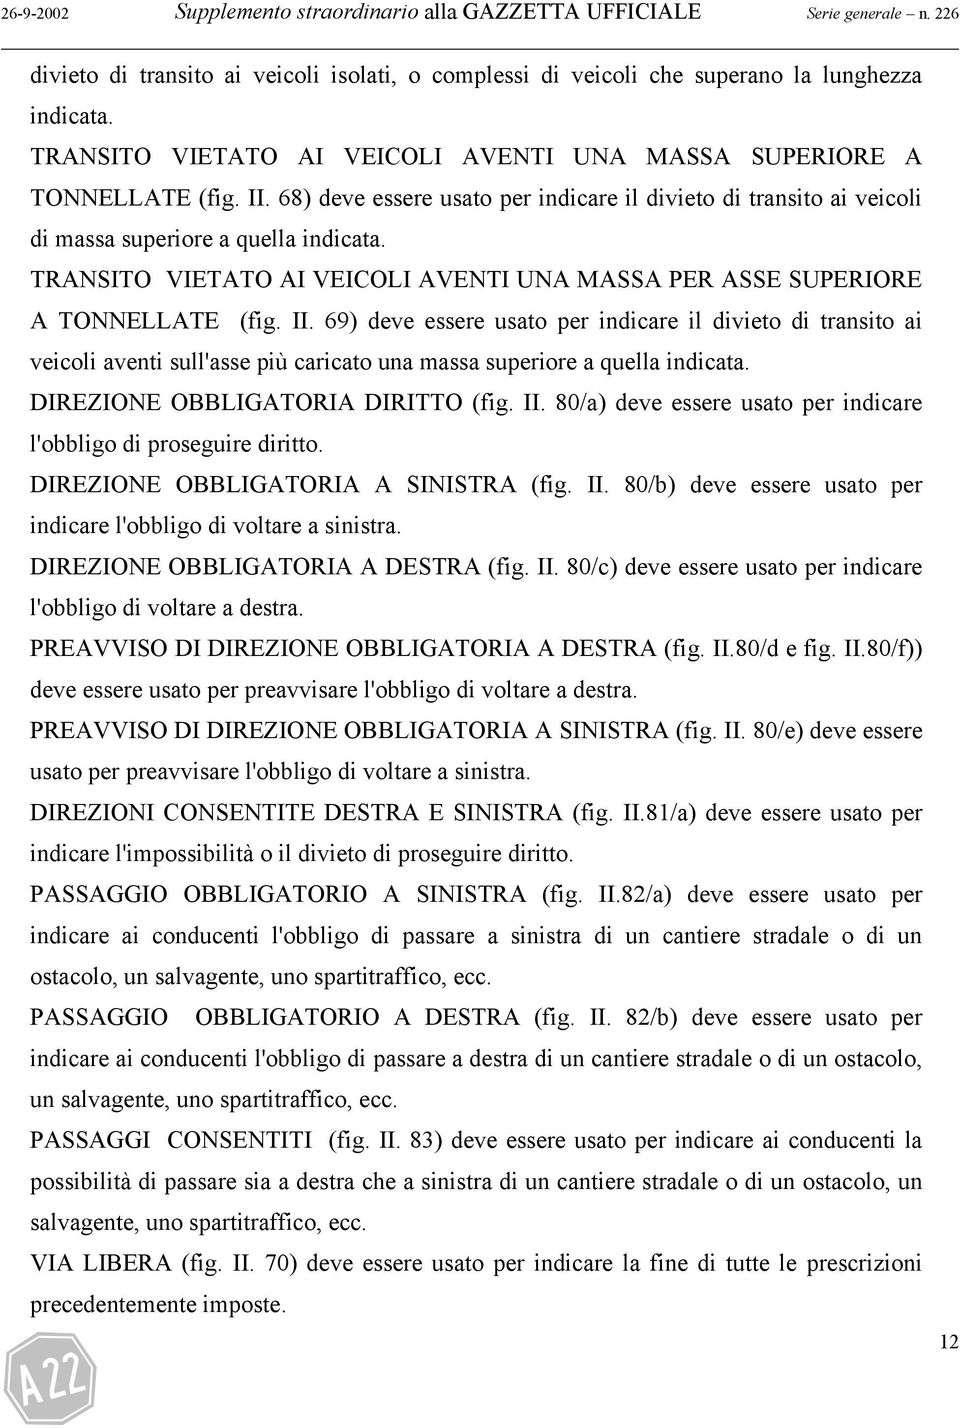 TRANSITO VIETATO AI VEICOLI AVENTI UNA MASSA PER ASSE SUPERIORE A TONNELLATE (fig. II.